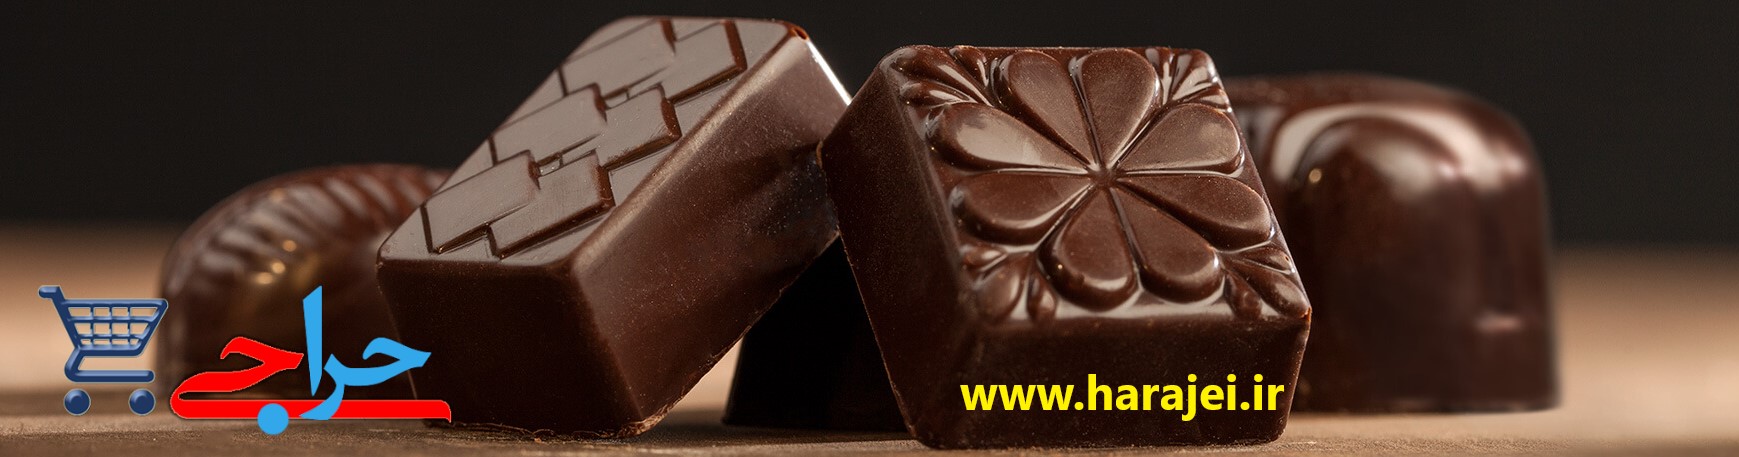 واردات و خرید و قیمت فروش و پخش و لیست قیمت روز انواع بیسکویت و شکلات خارجی اصل